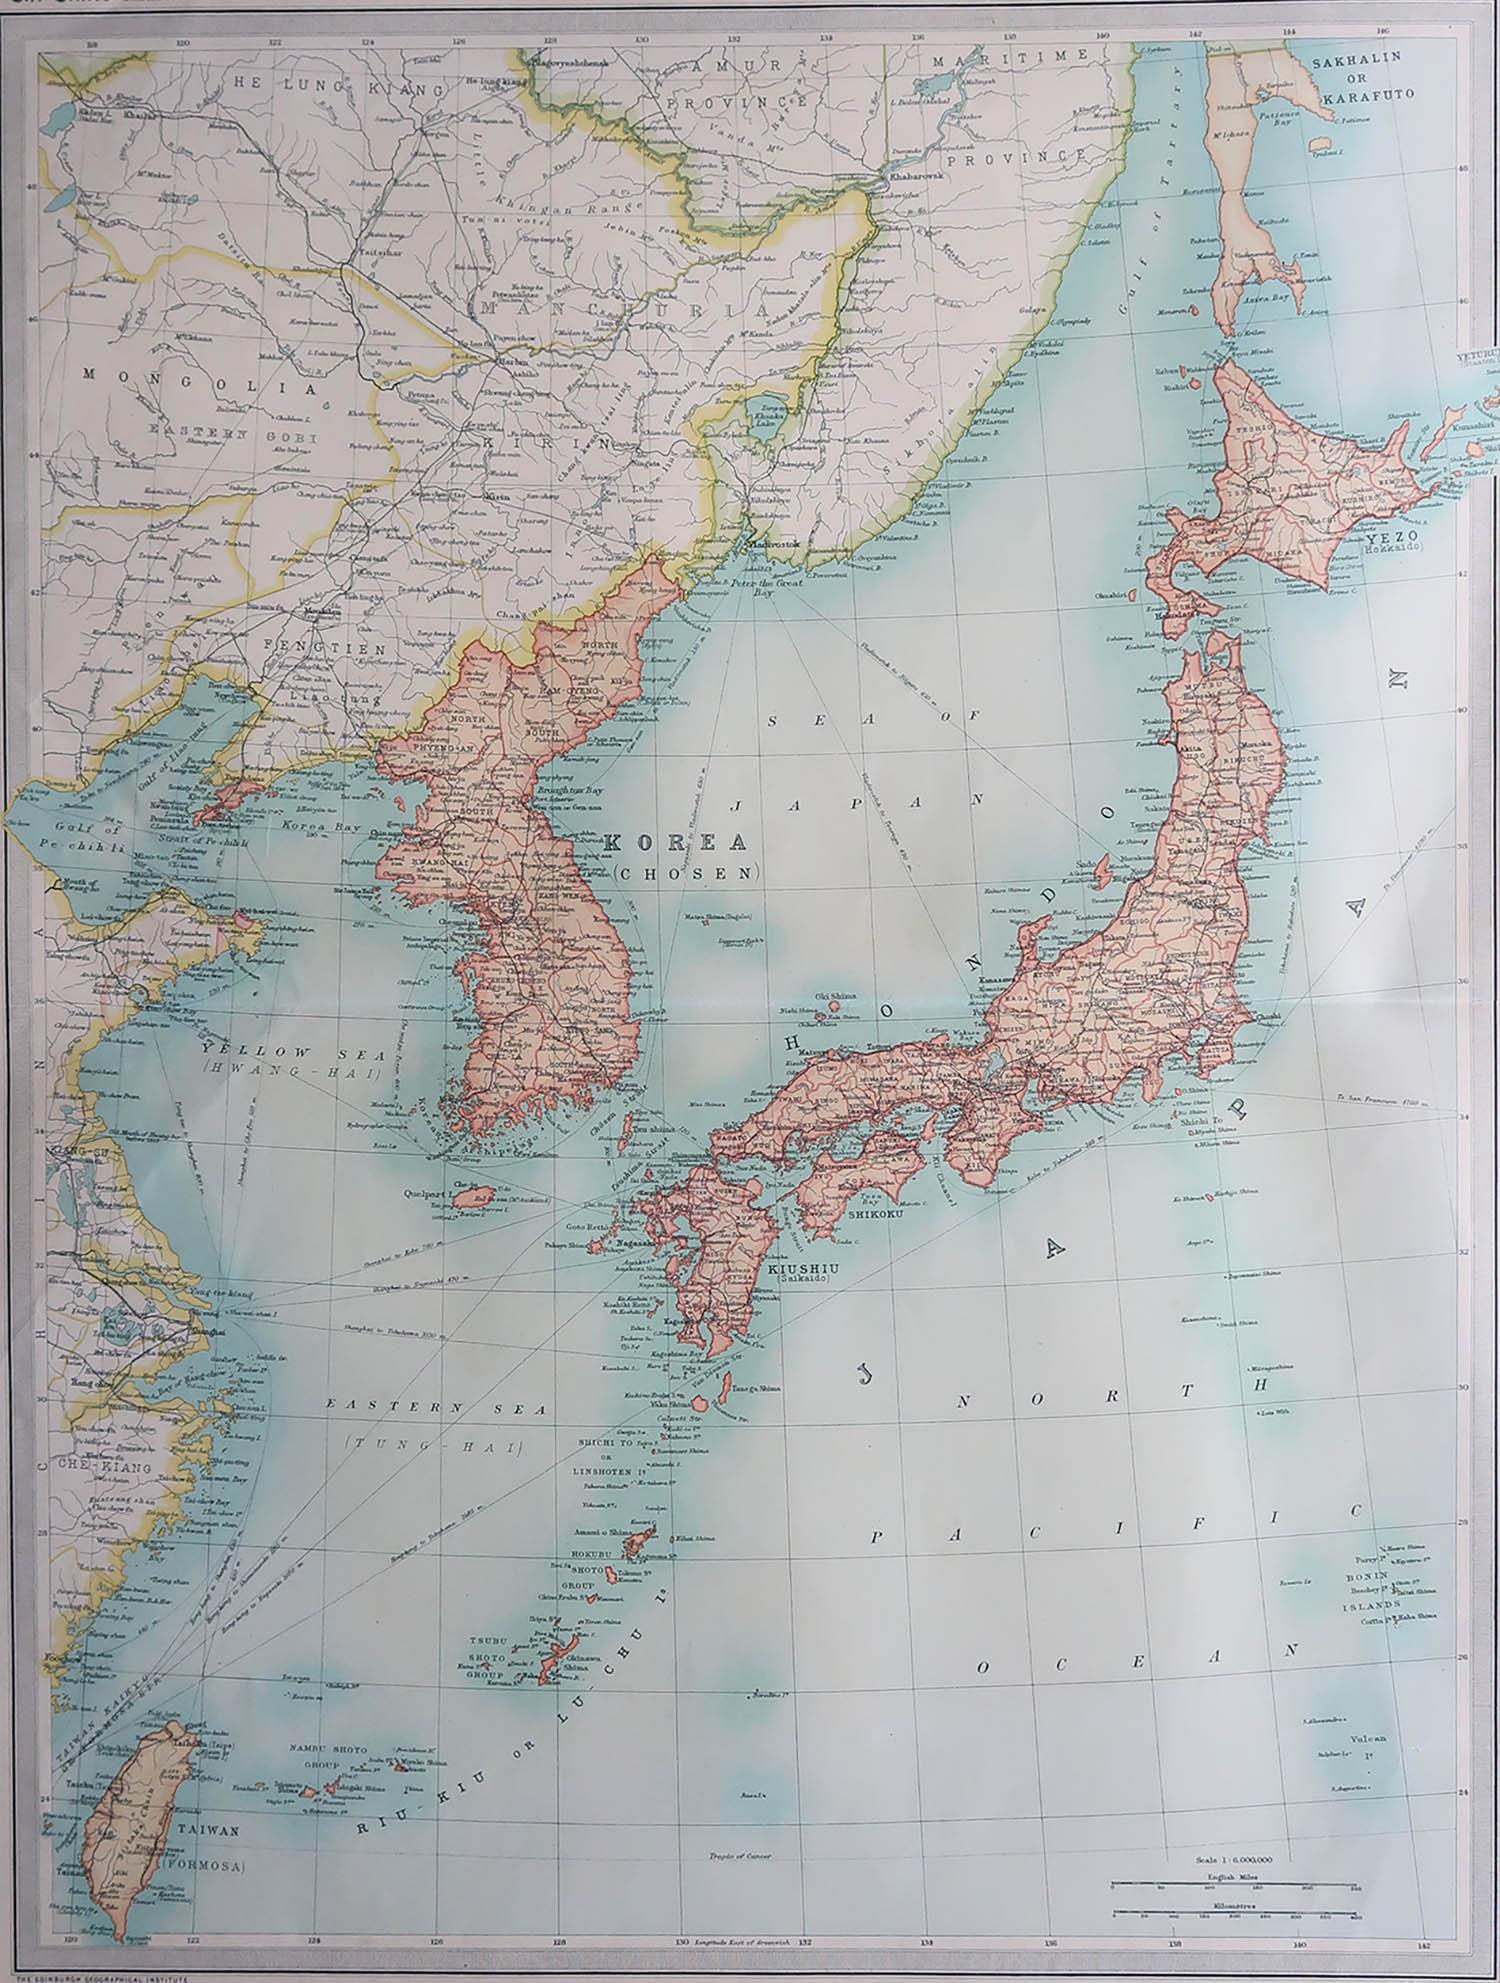 Große Karte von Japan

Ungerahmt

Original Farbe

Von John Bartholomew und Co. Geographisches Institut Edinburgh

Veröffentlicht, ca. 1920

Kostenloser Versand.
 